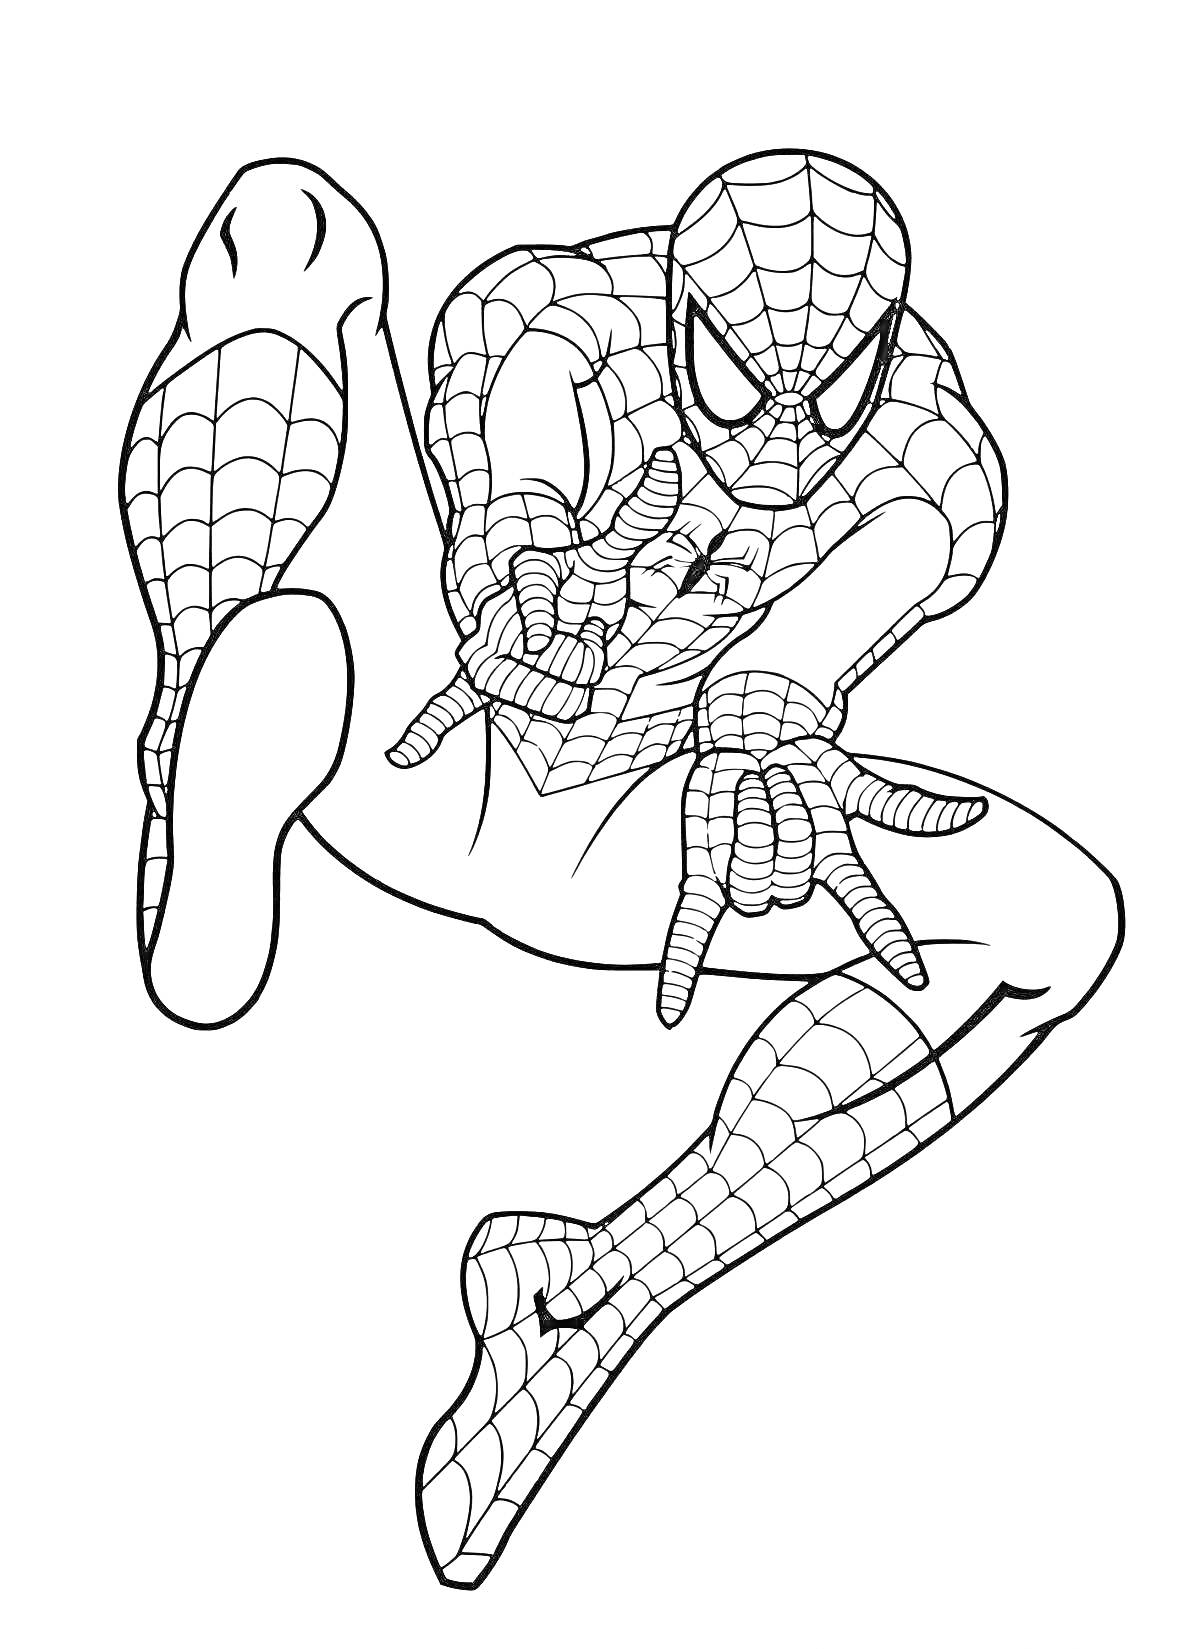 РаскраскаЧеловек-паук в прыжке, стреляющий паутиной